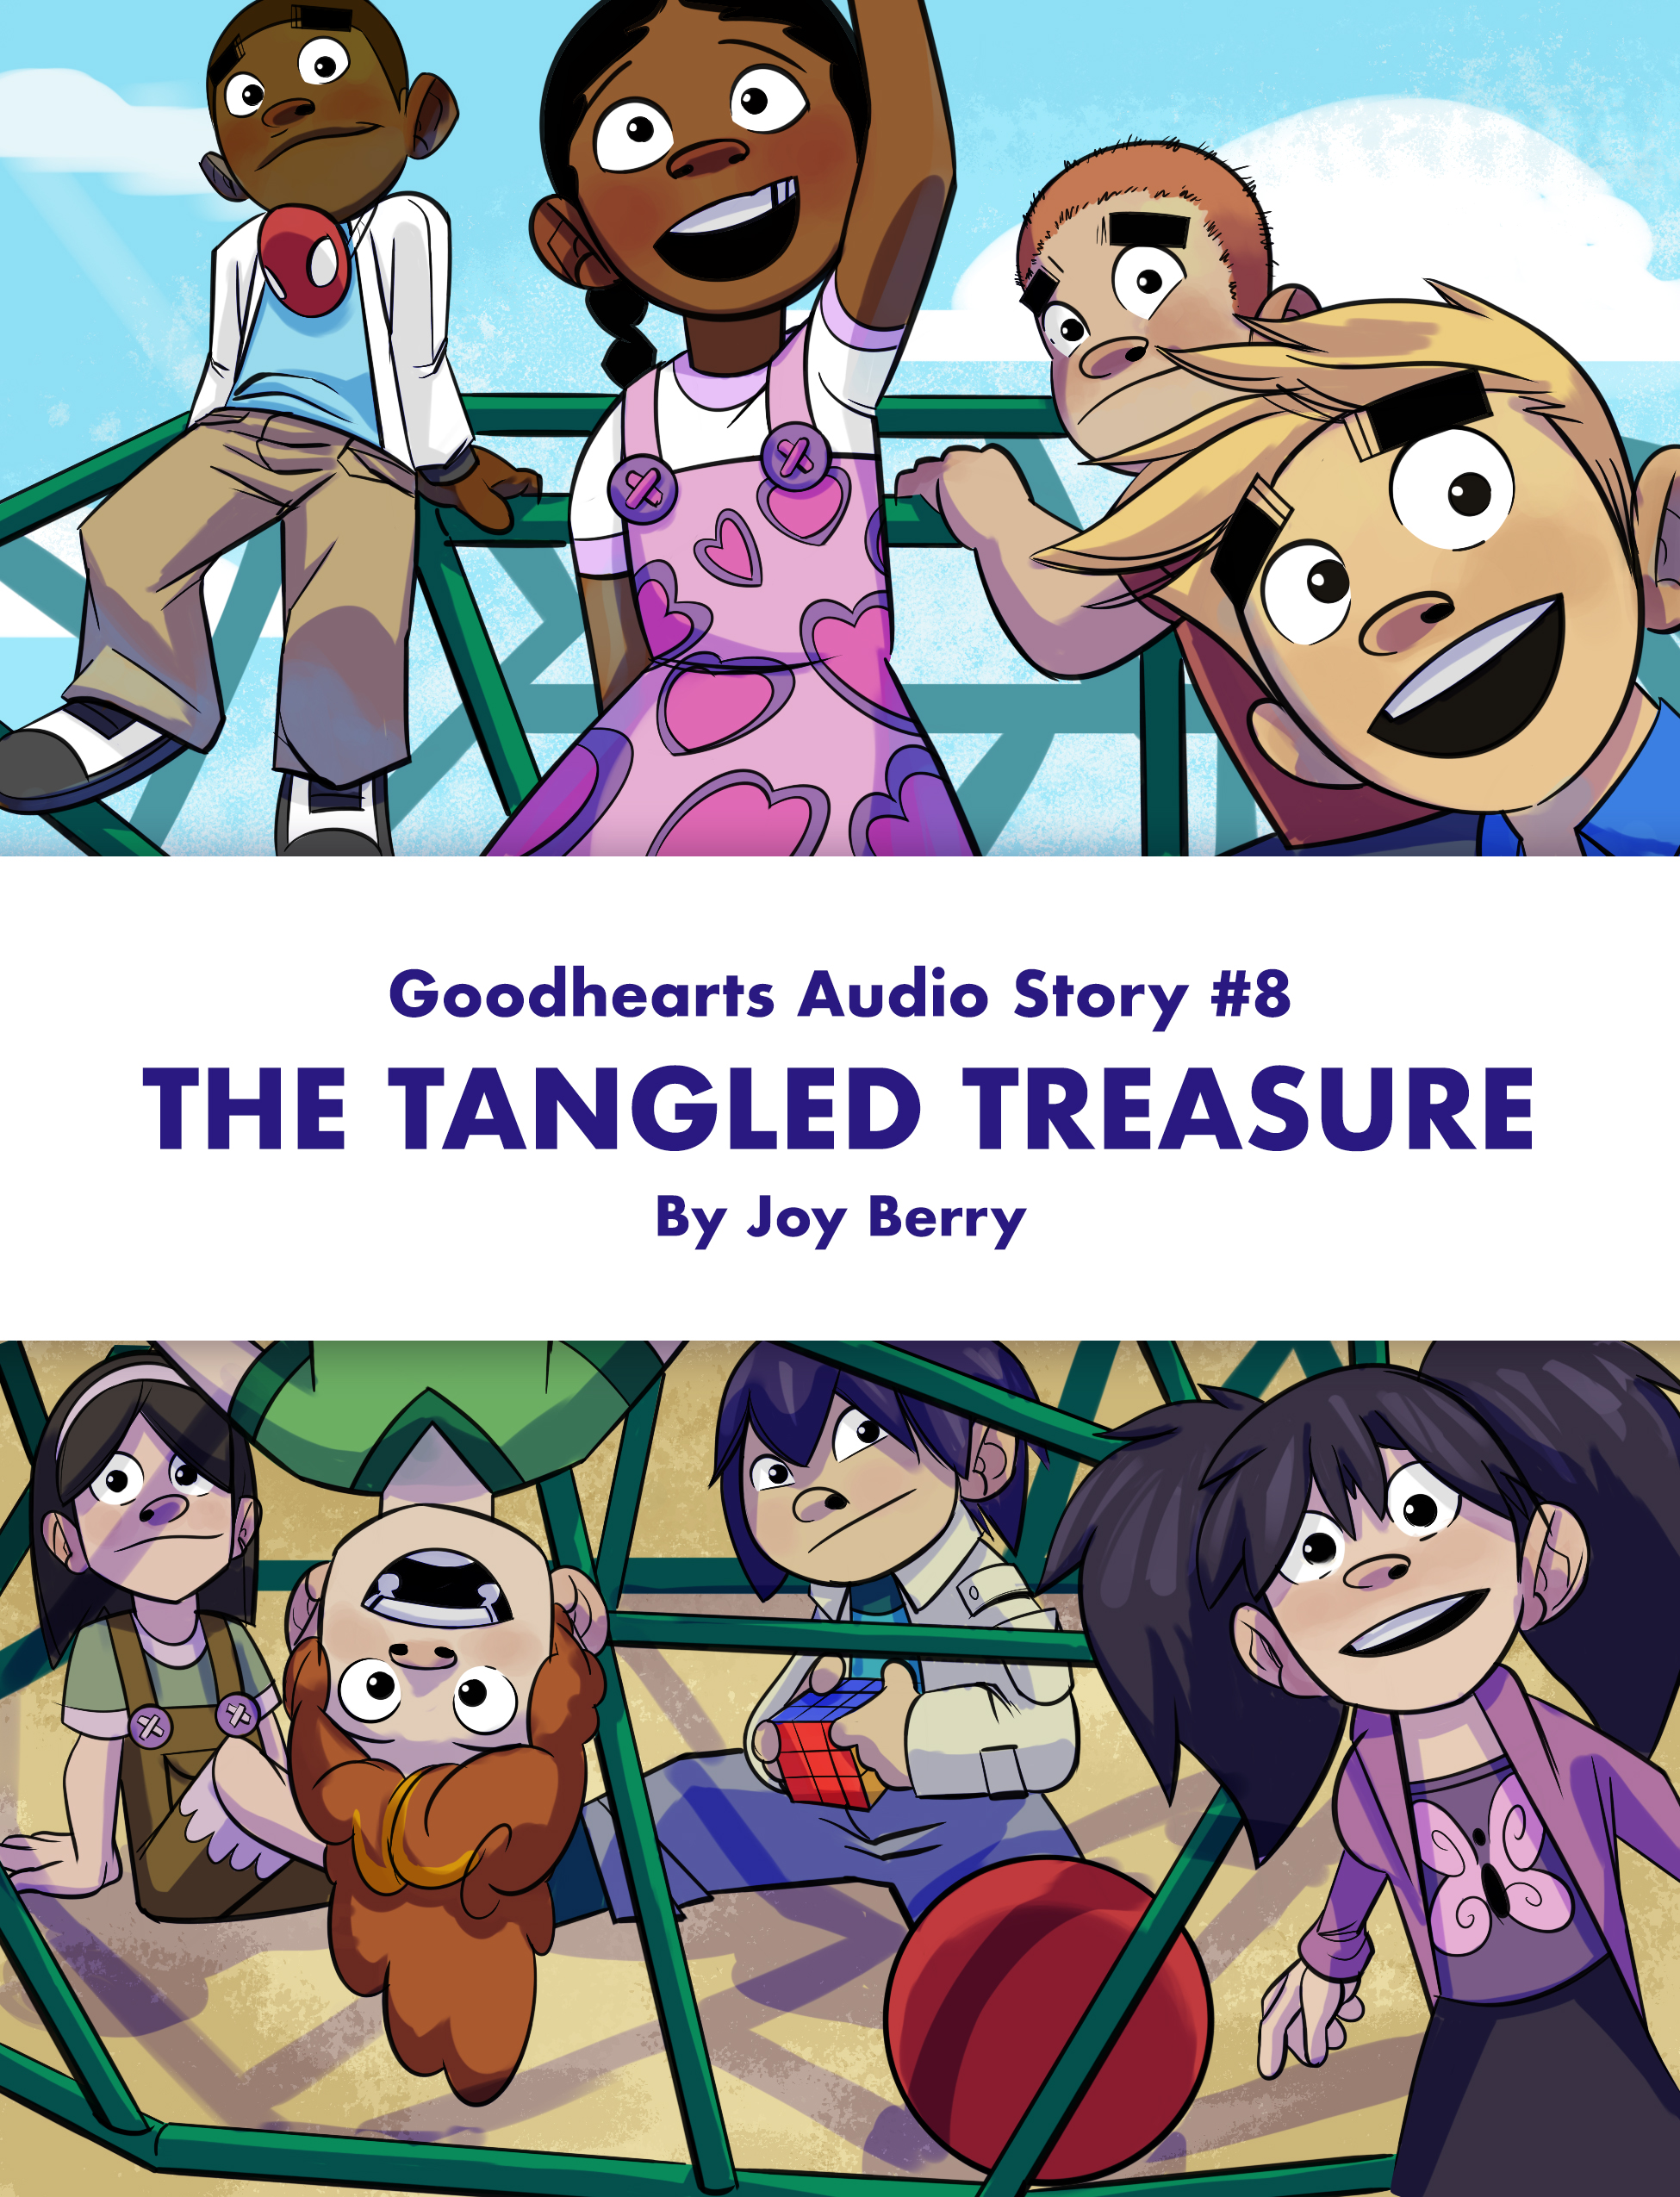 The Tangled Treasure